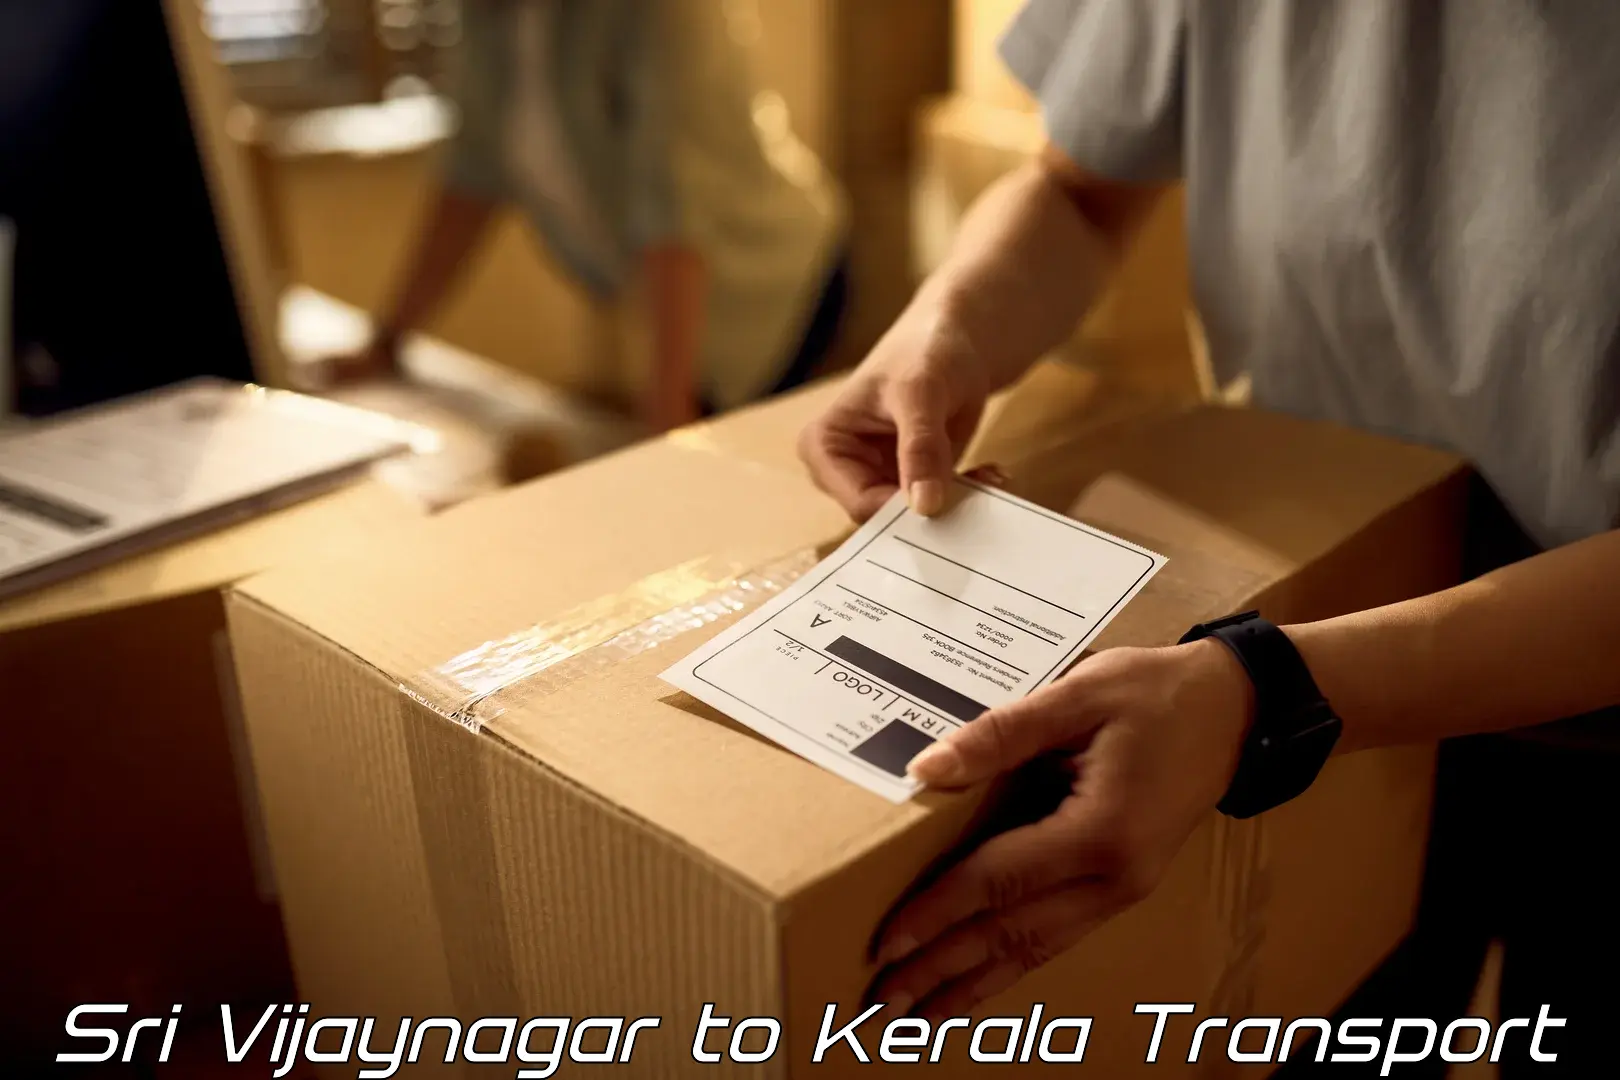 Goods transport services Sri Vijaynagar to Kalanjoor